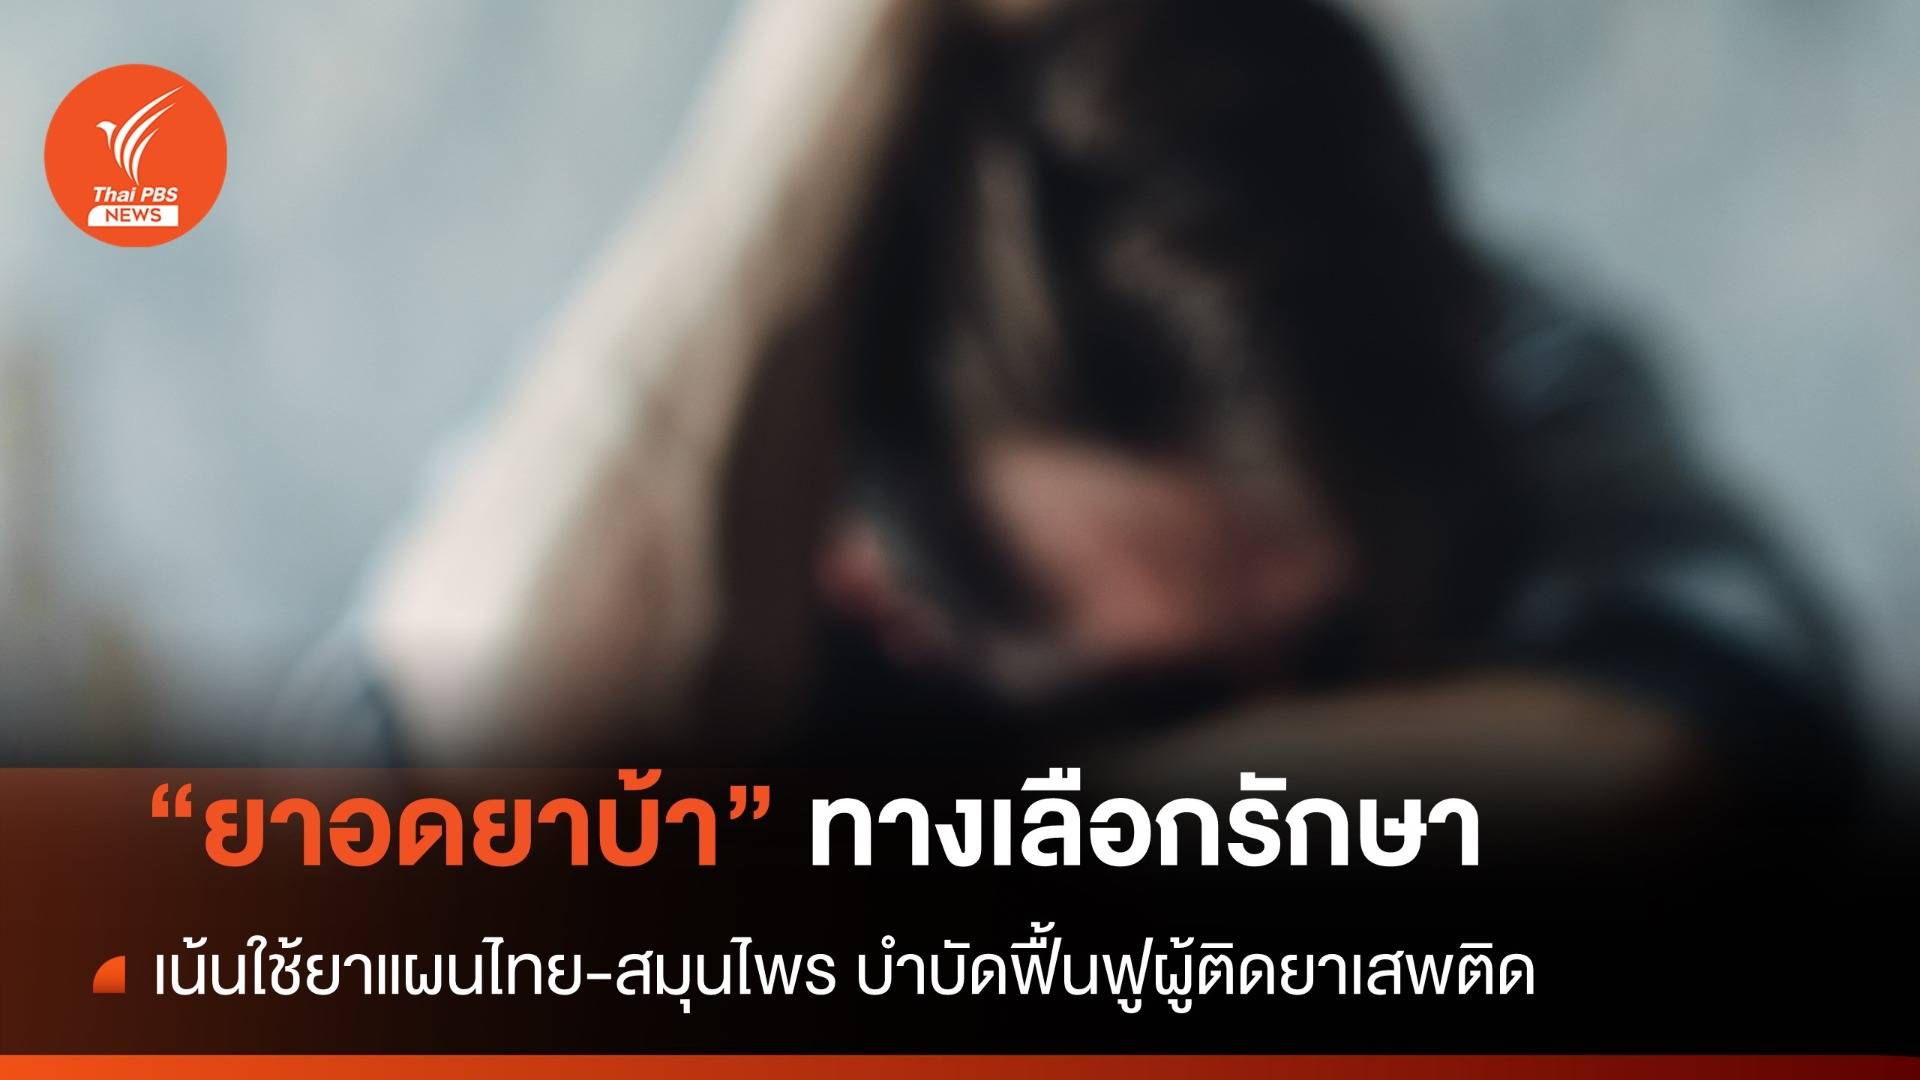 กรมการแพทย์แผนไทยฯ เปิดตำรับยา "ยาอดยาบ้า" ทางเลือกรักษาผู้ติดยาเสพติด